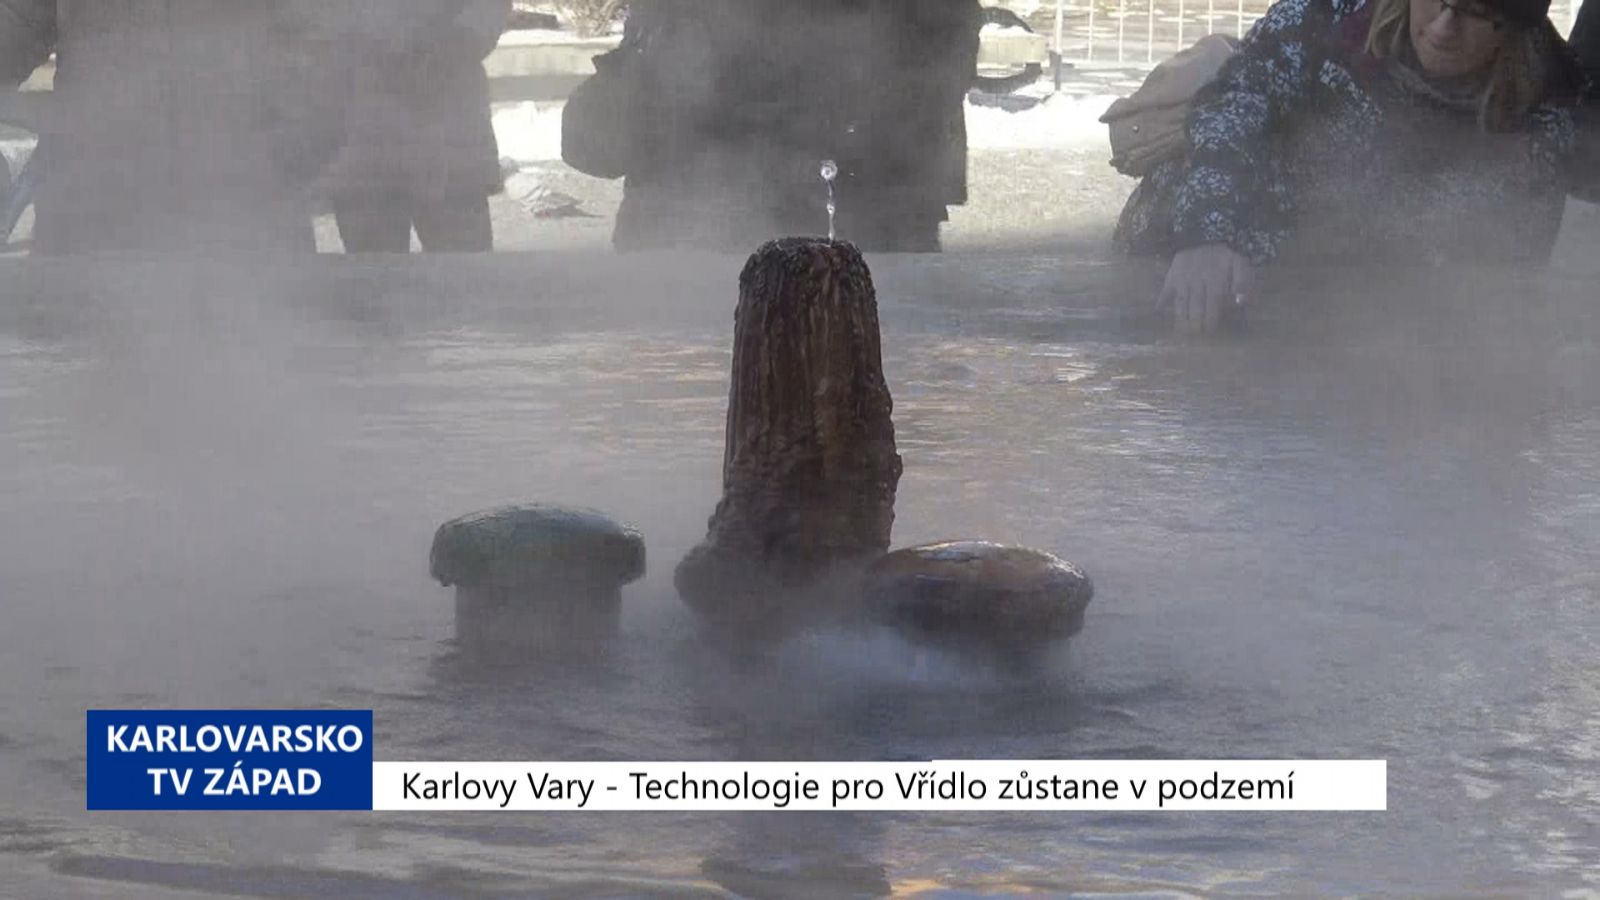 Karlovy Vary: Technologie pro Vřídlo zůstane v podzemí (TV Západ)